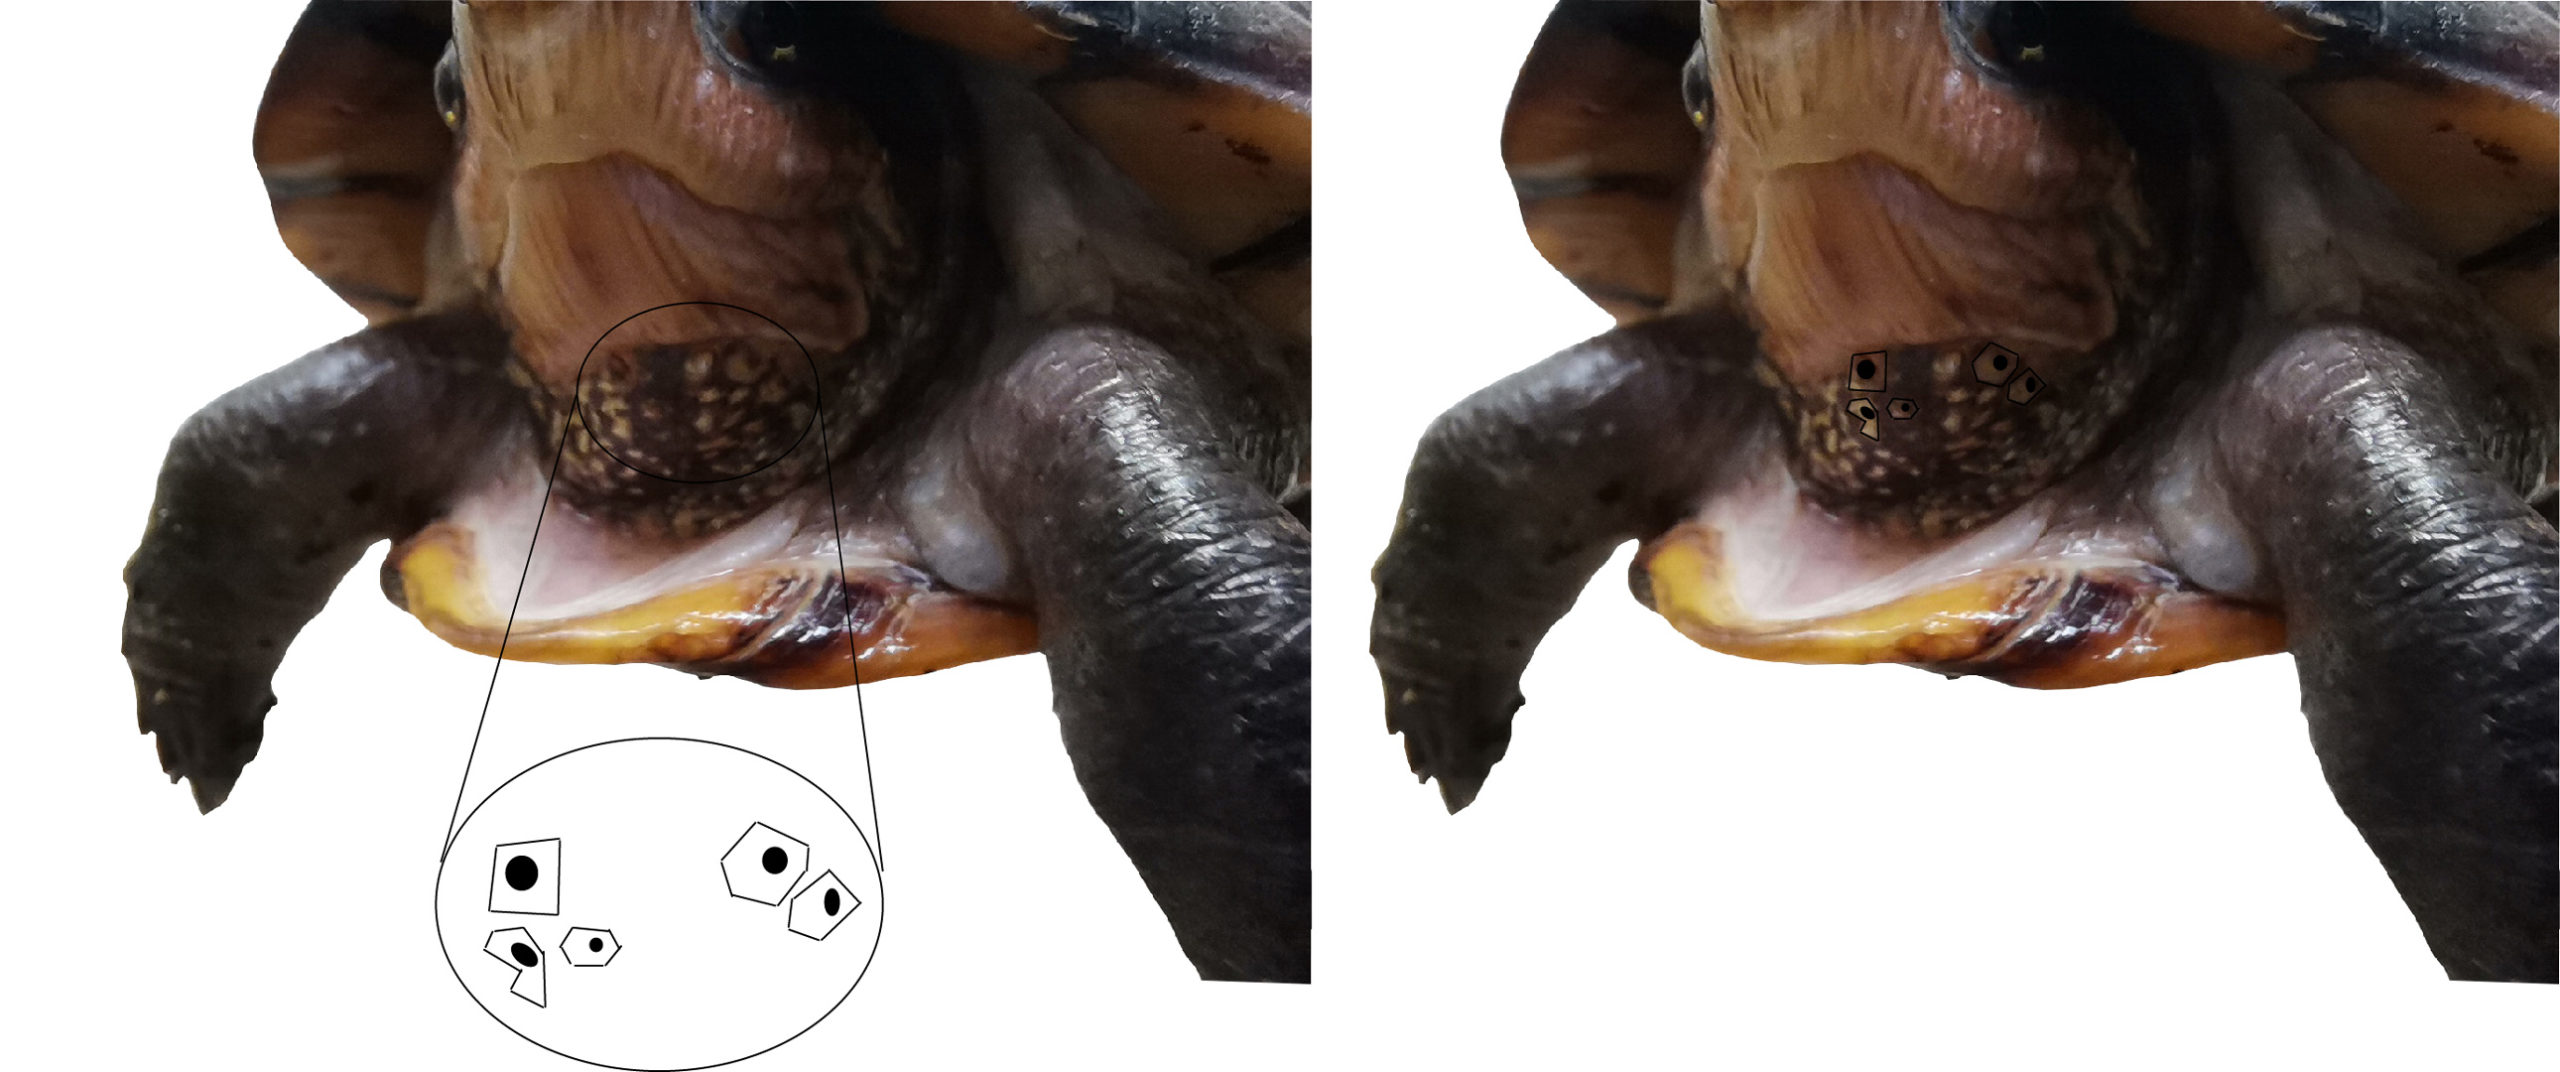 Manchas en el cuerpo de la tortuga